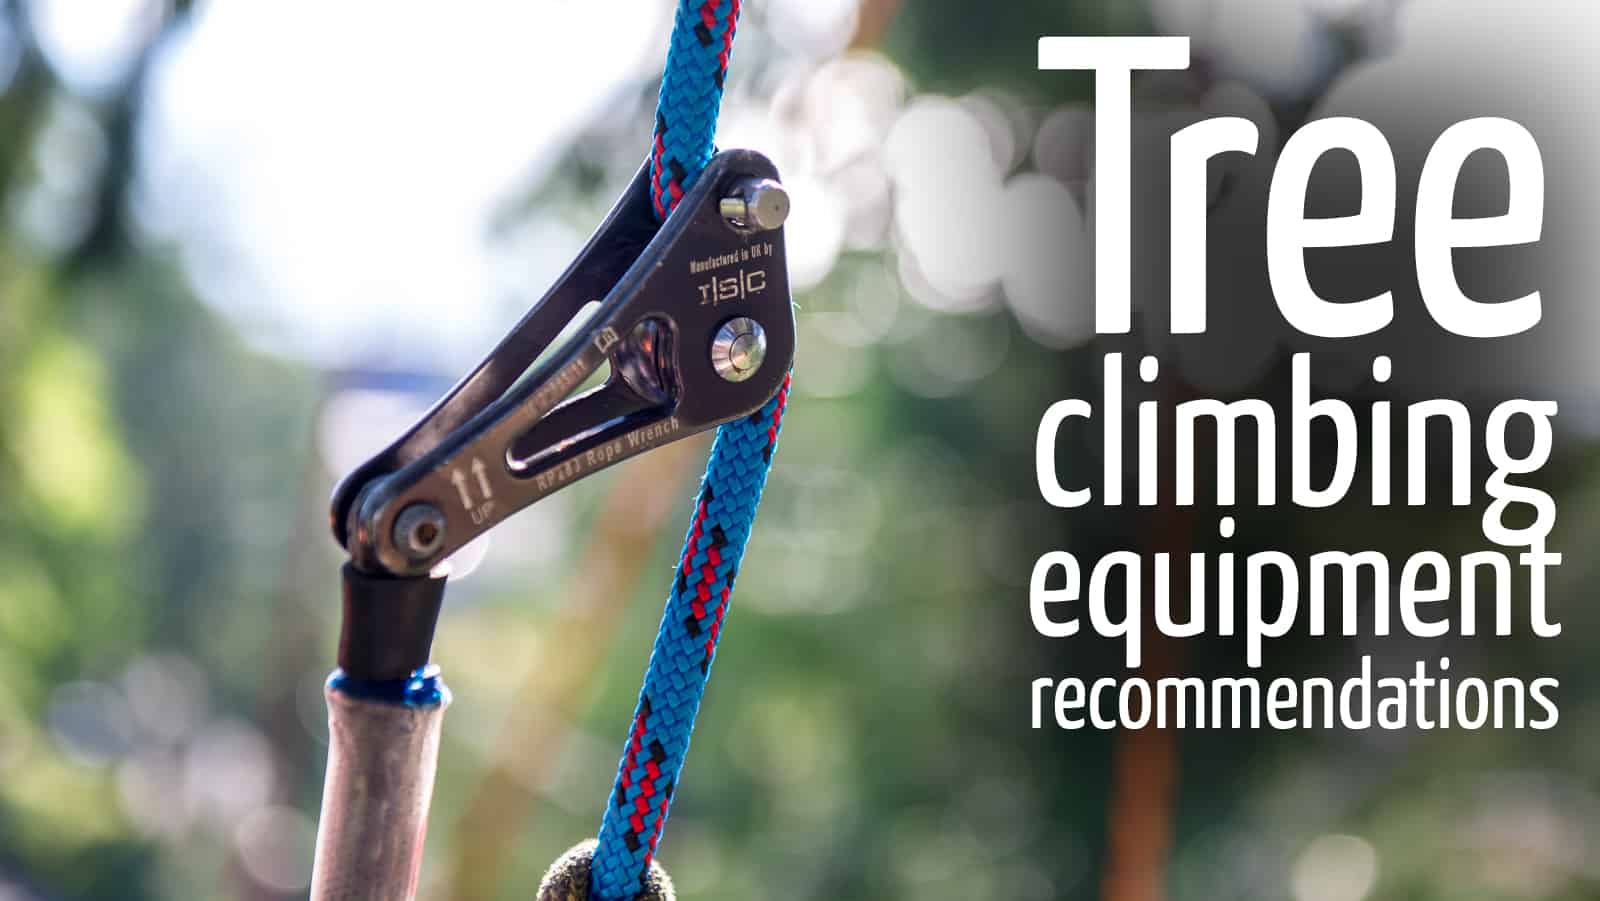 Equipment recommendations : ClimbingArborist.com